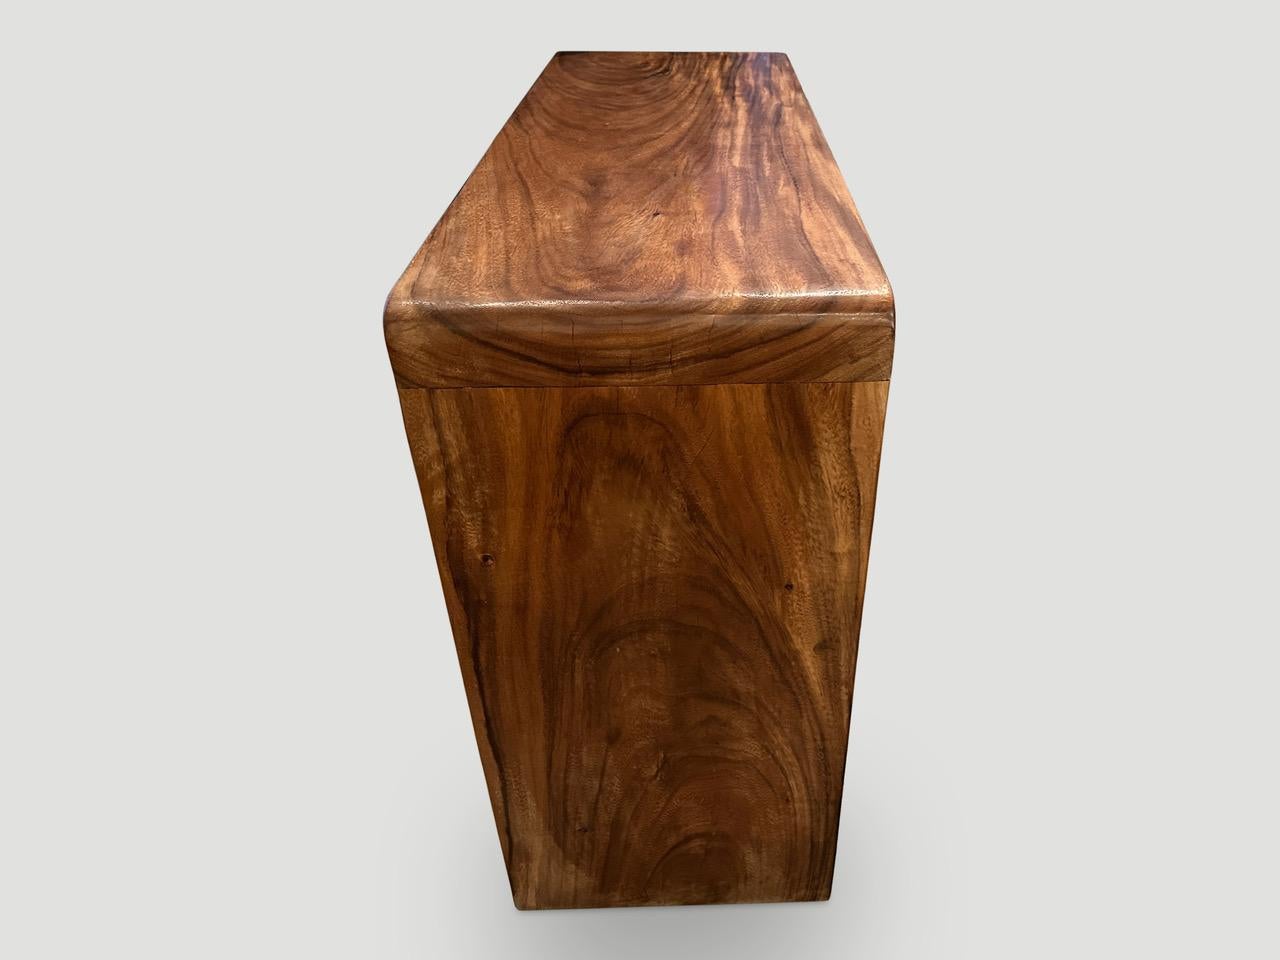 Beeindruckender minimalistischer Konsolentisch, handgefertigt aus wiedergewonnenem Suar-Holz mit Schmetterlingsdetails auf den Beinen, wie auf den letzten Bildern zu sehen. Jede Platte ist drei Zoll dick. Die Oberfläche ist mit einem natürlichen Öl